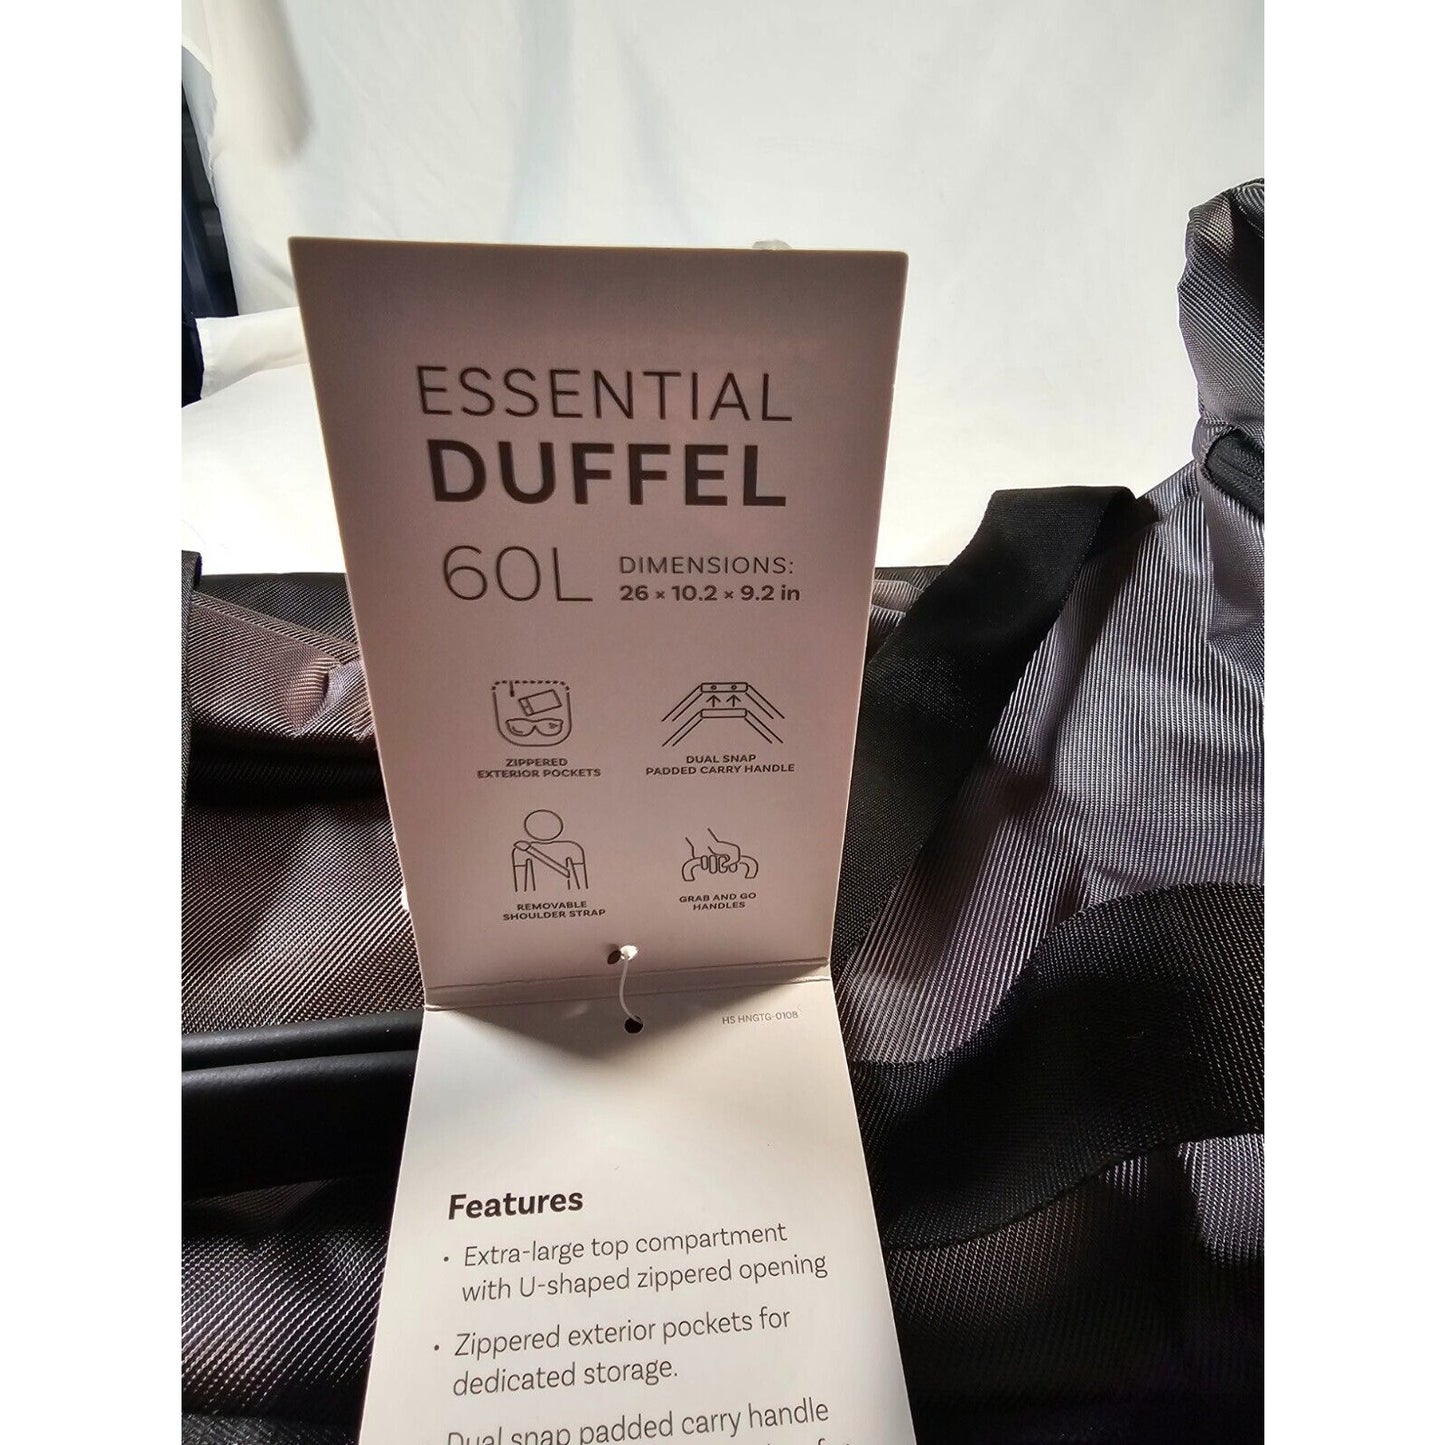 High Sierra 60L Essential Duffel Bag - Mercury/Black